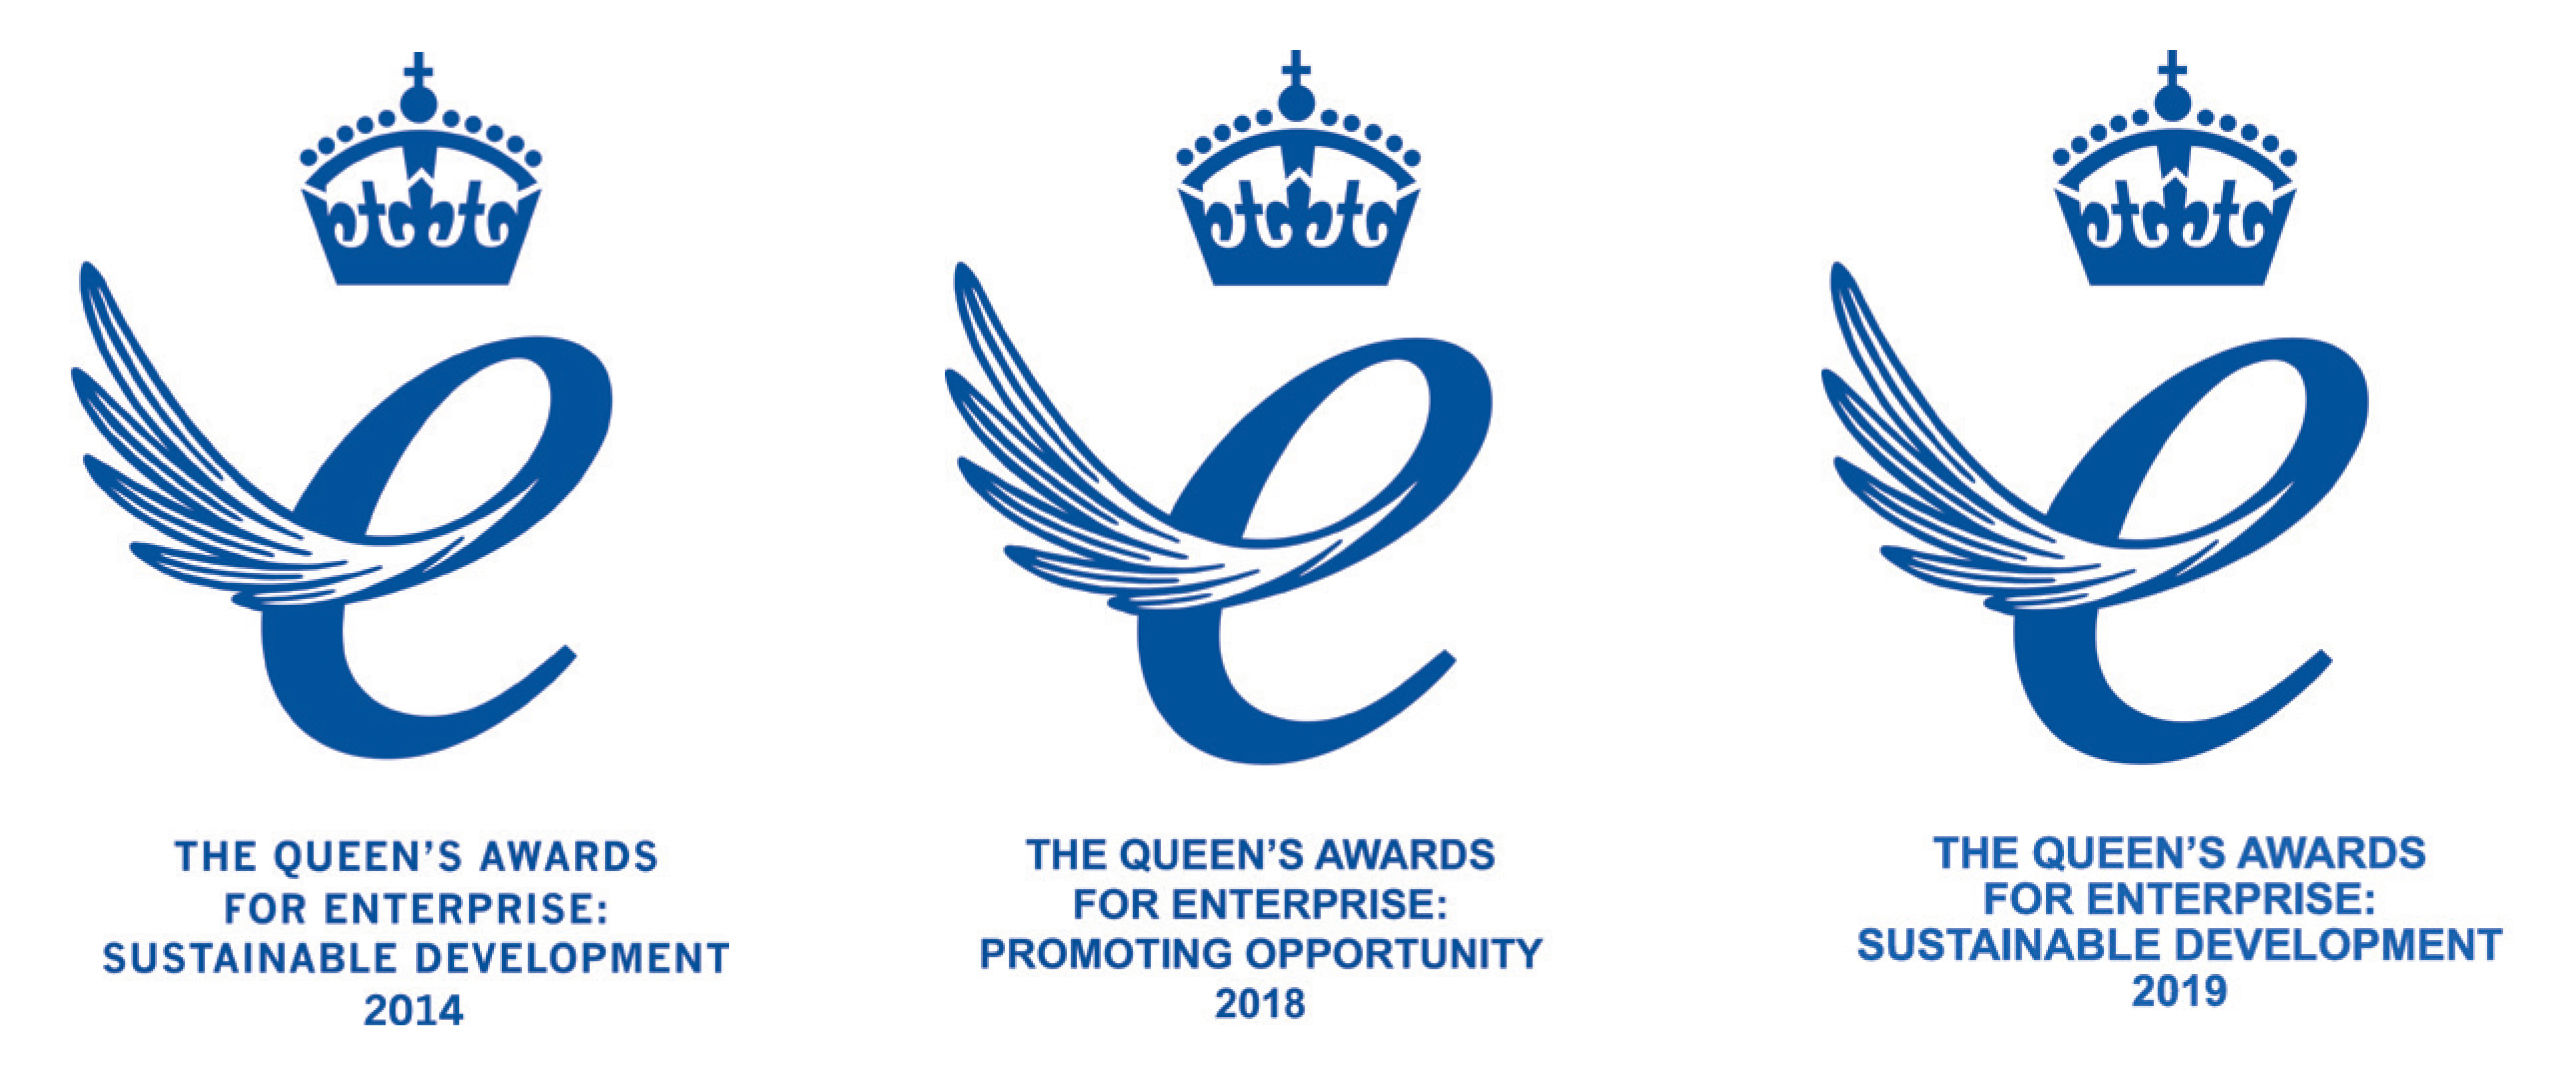 Queen's Awards Logos - Group.jpg